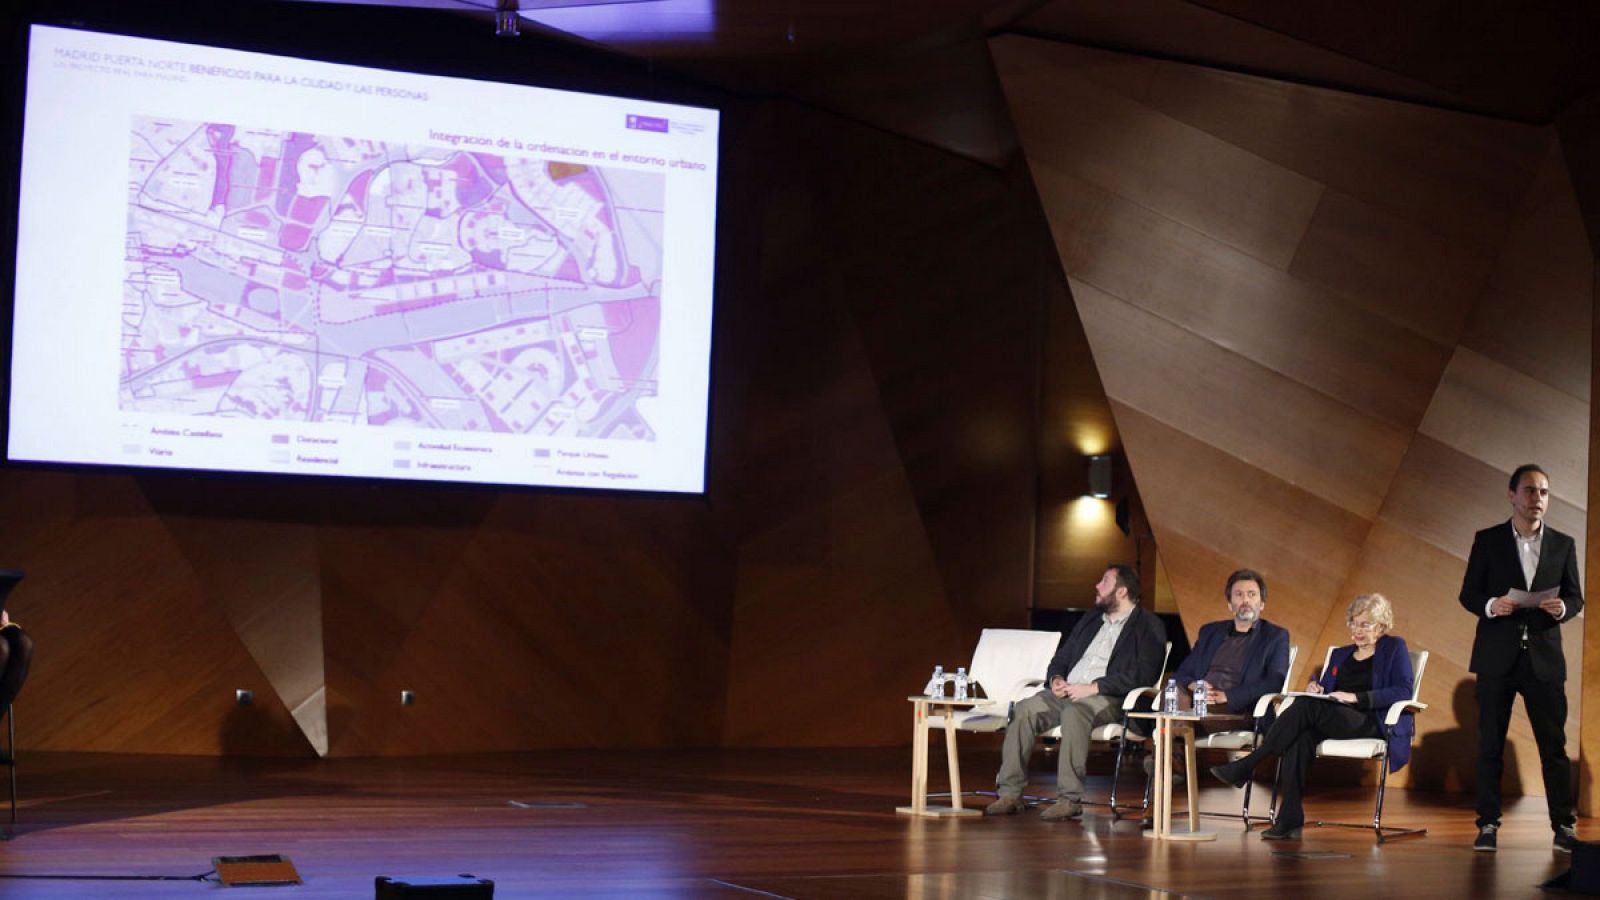 Presentación del proyecto Madrid Puerta Norte